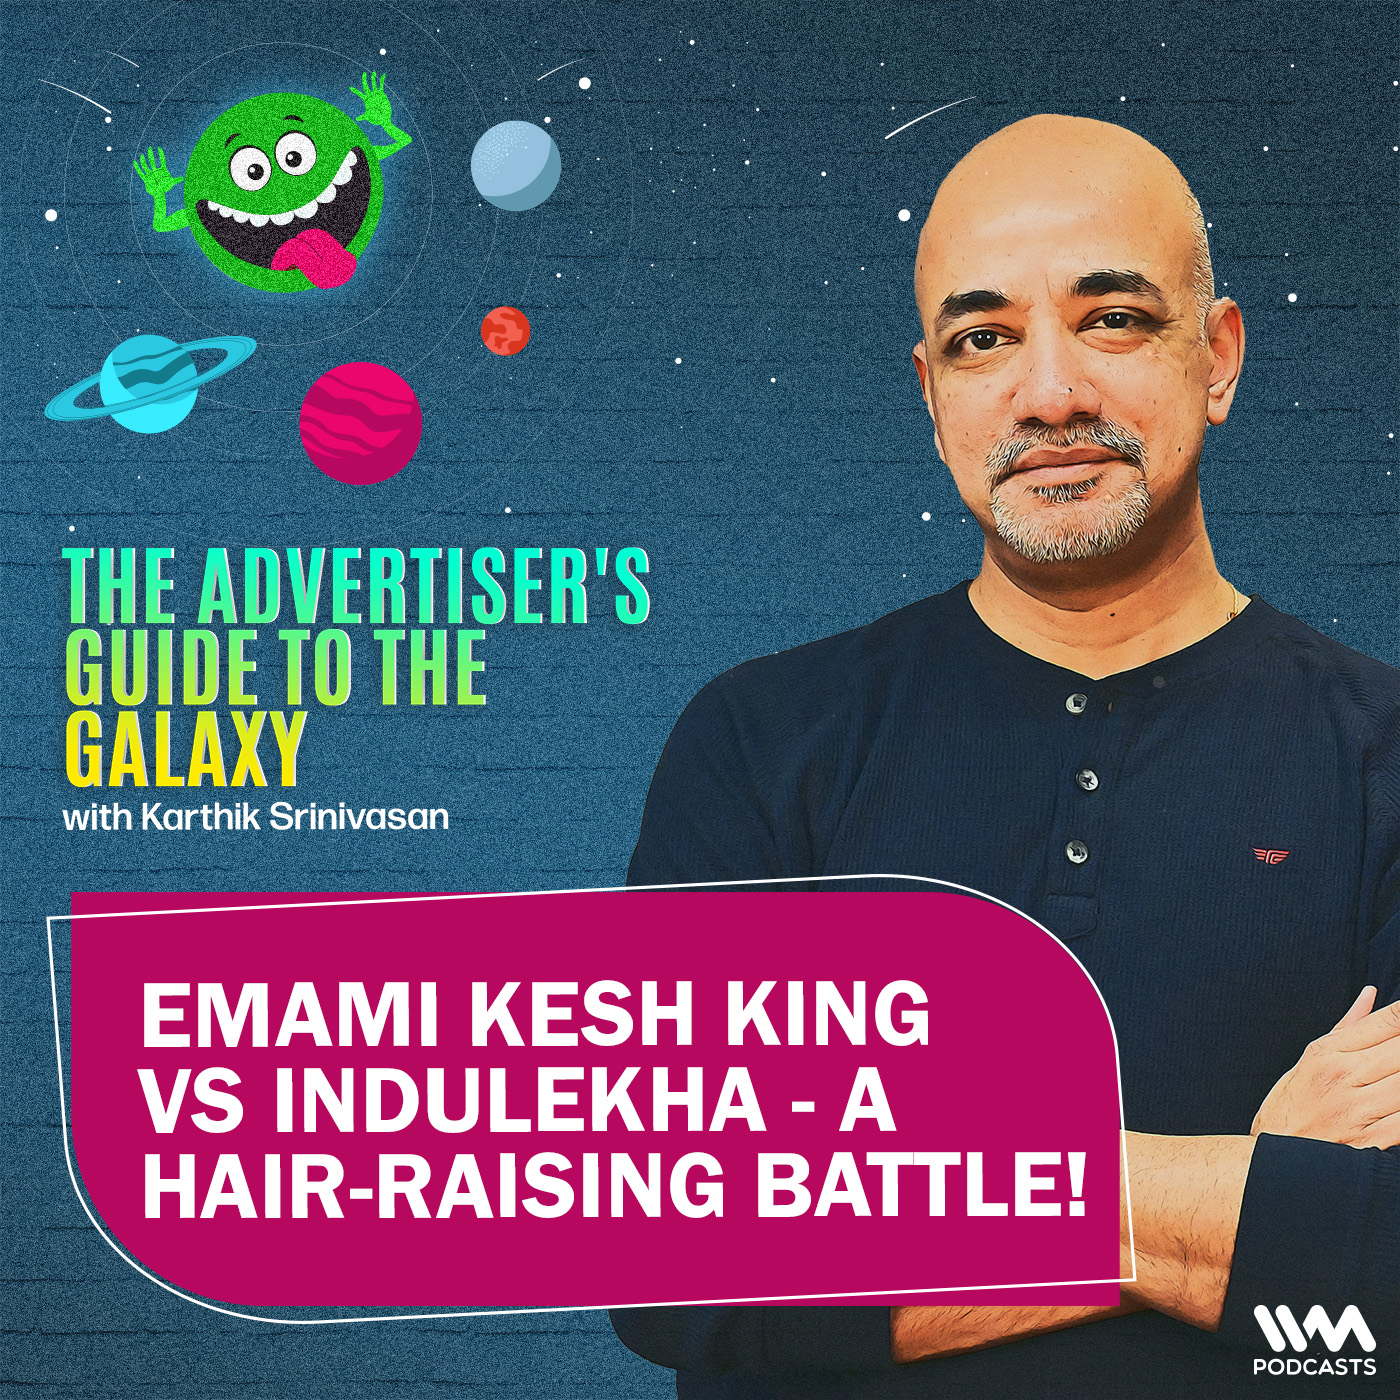 Emami Kesh King vs Indulekha - a hair-raising battle!